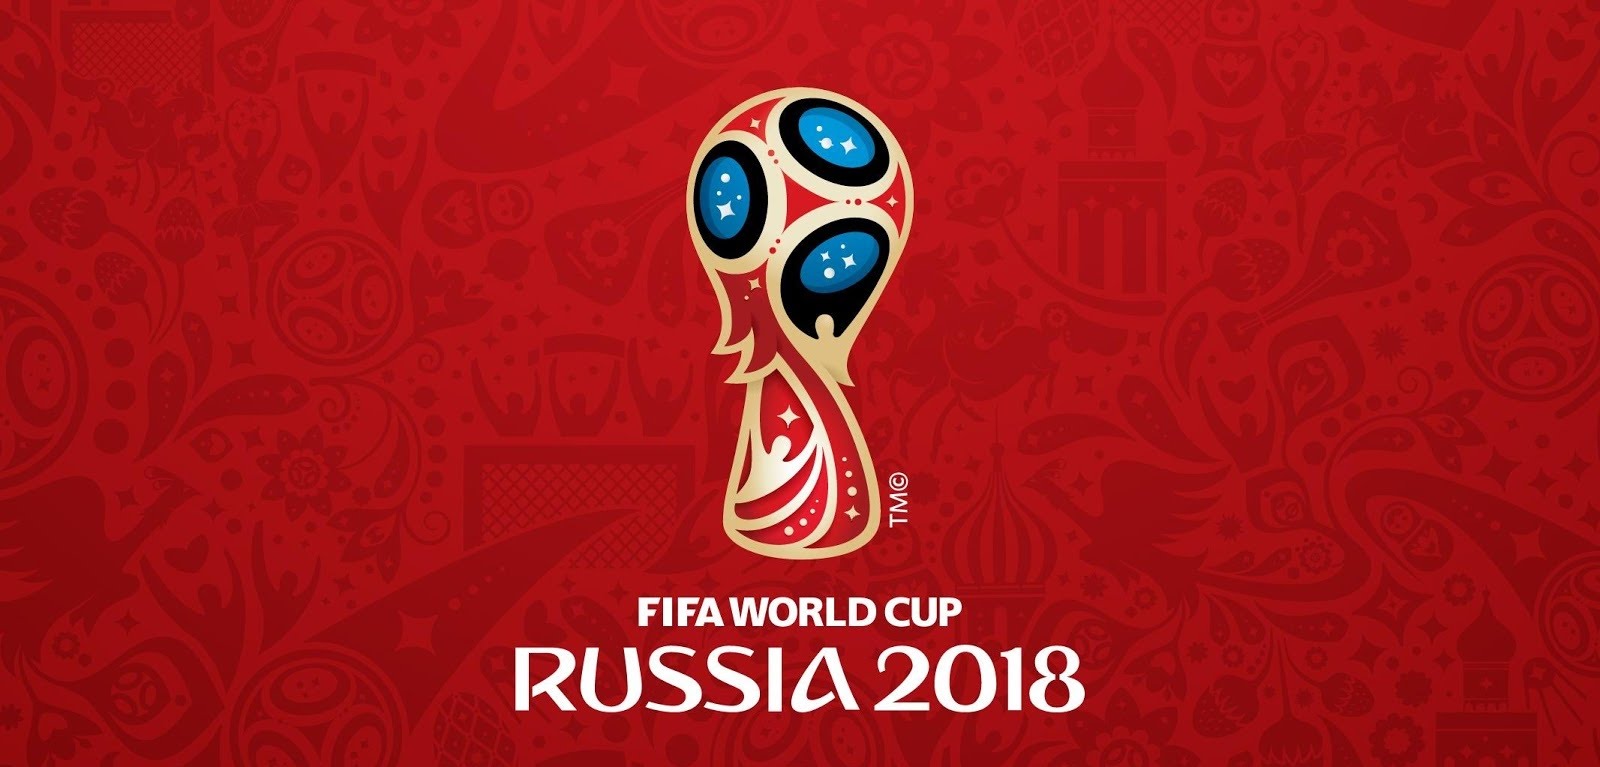 Argentina es cabeza de serie en el grupo D y debuta contra Islandia el sábado 16 de junio a las 10 en Moscú